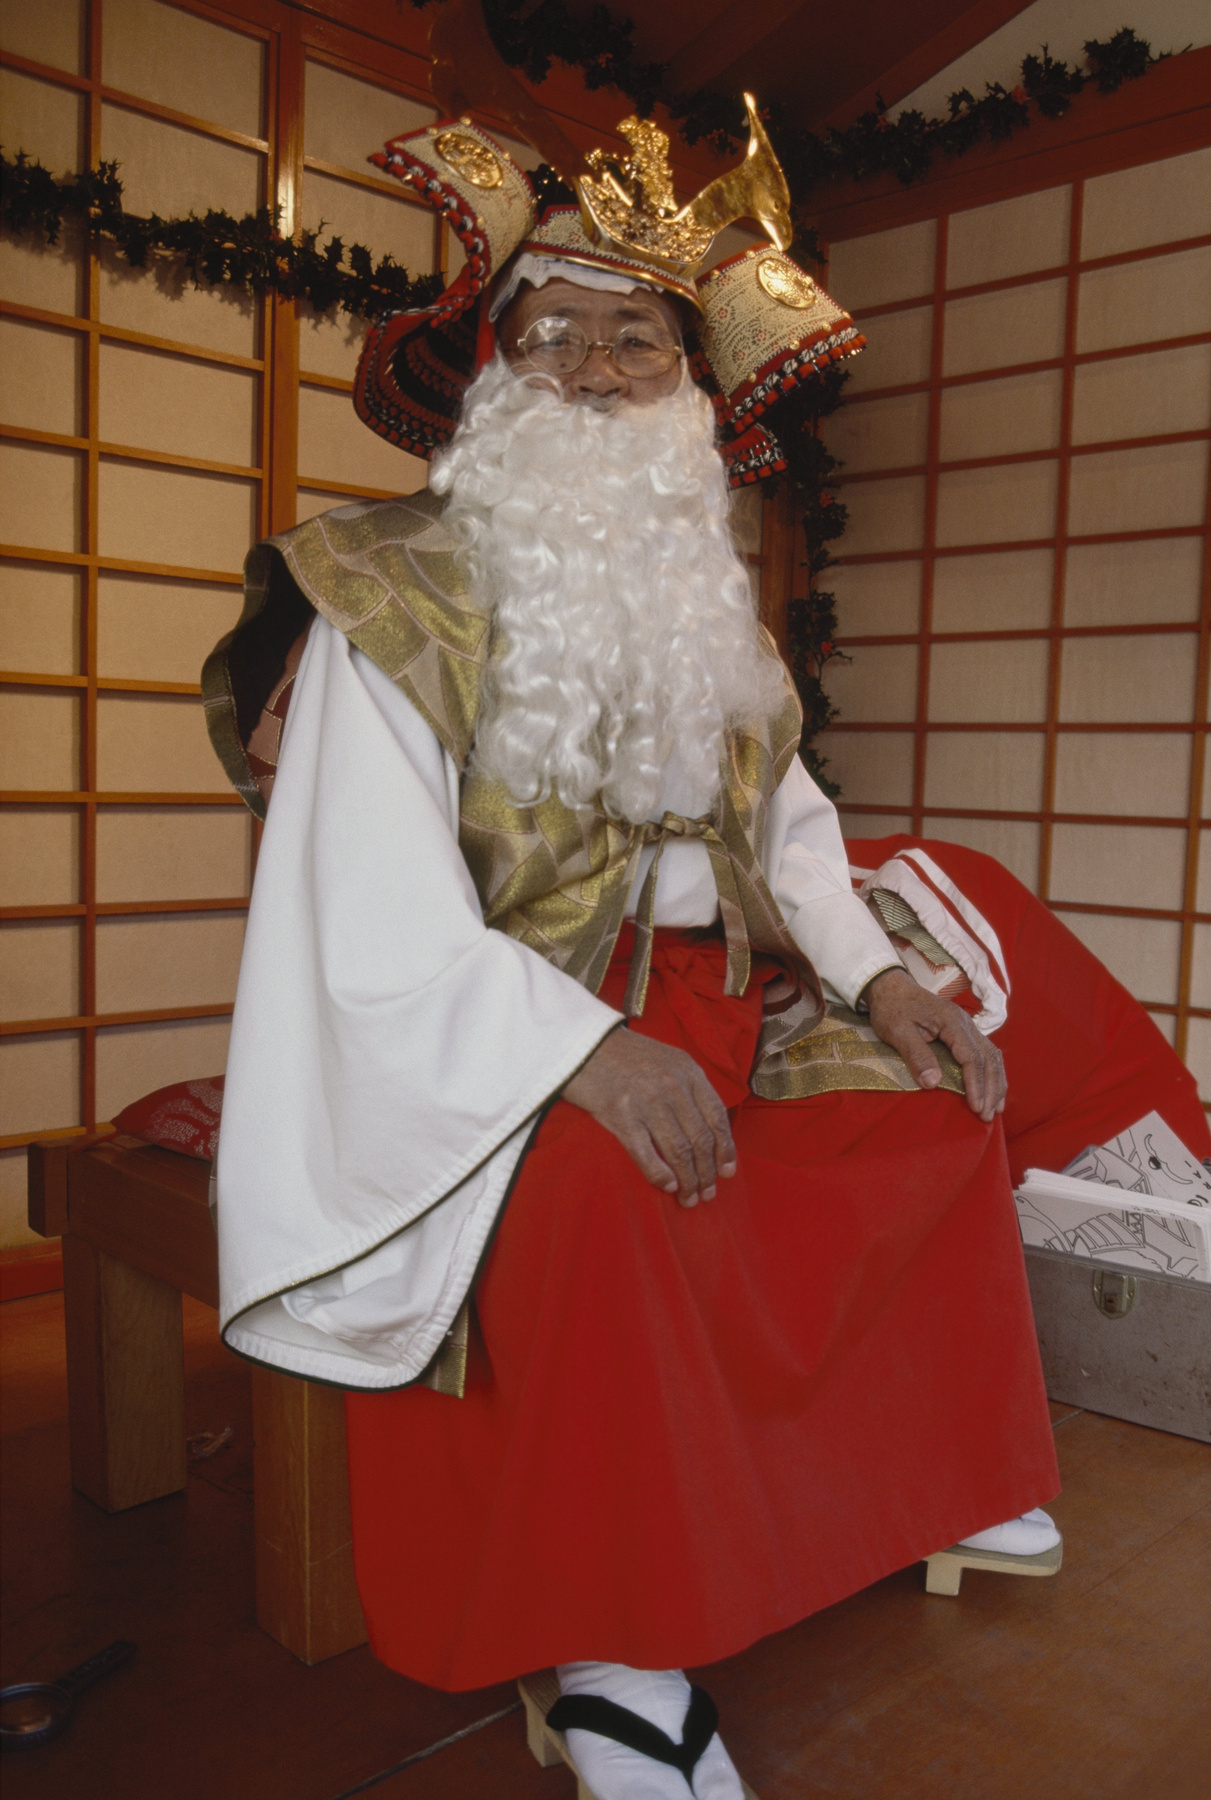 Egy Mikulásnak öltözött japán-amerikai férfi 2008 decemberében Kaliforniában.

